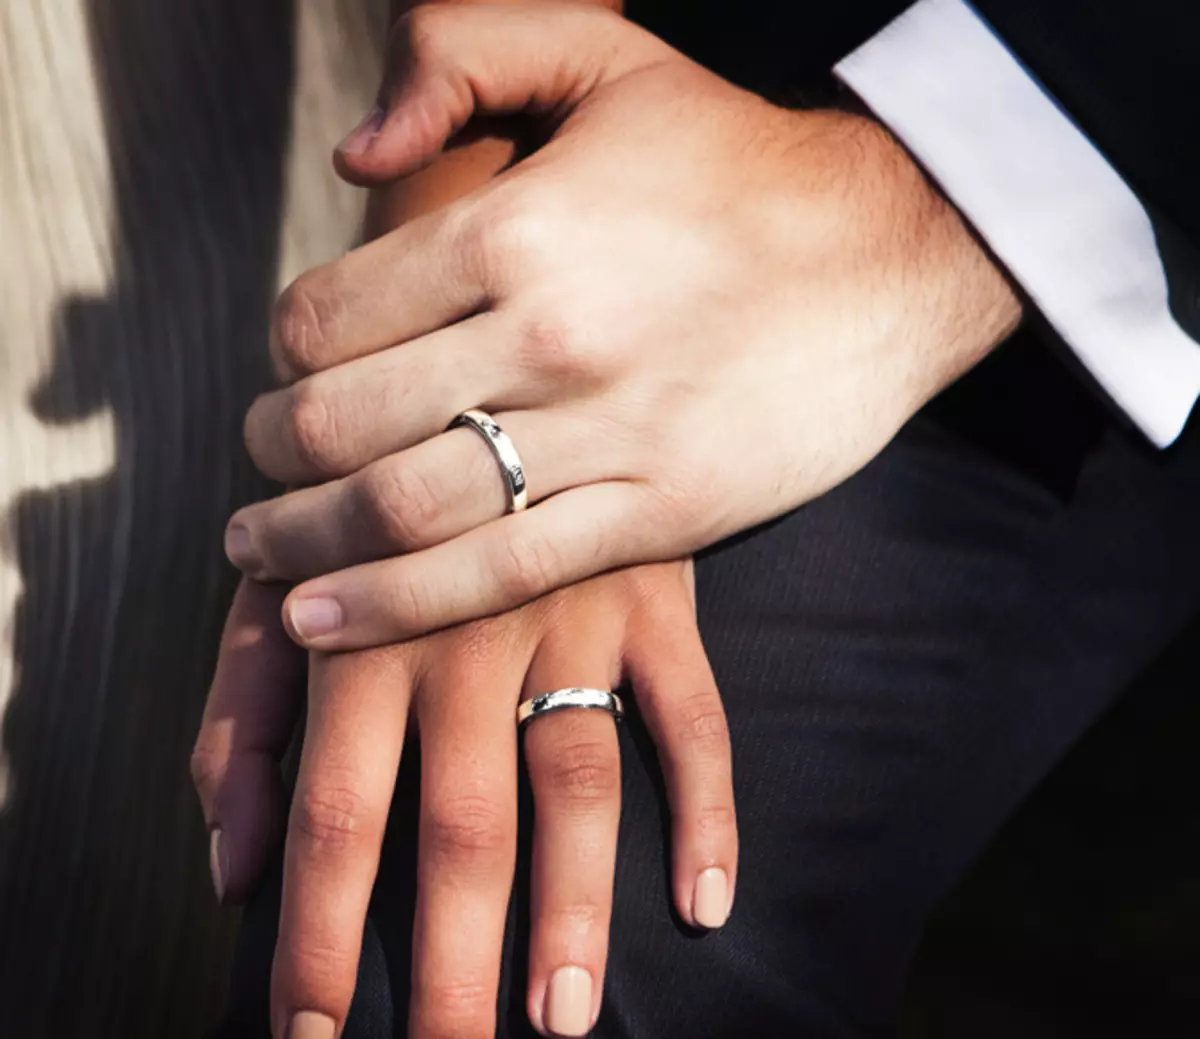 На какой руке носят армяне обручальное кольцо. Мужские кольца на руке. Мужские обручальные кольца на руке. Красивые обручальные кольца на руках. Рука в руке с обручальными кольцами.